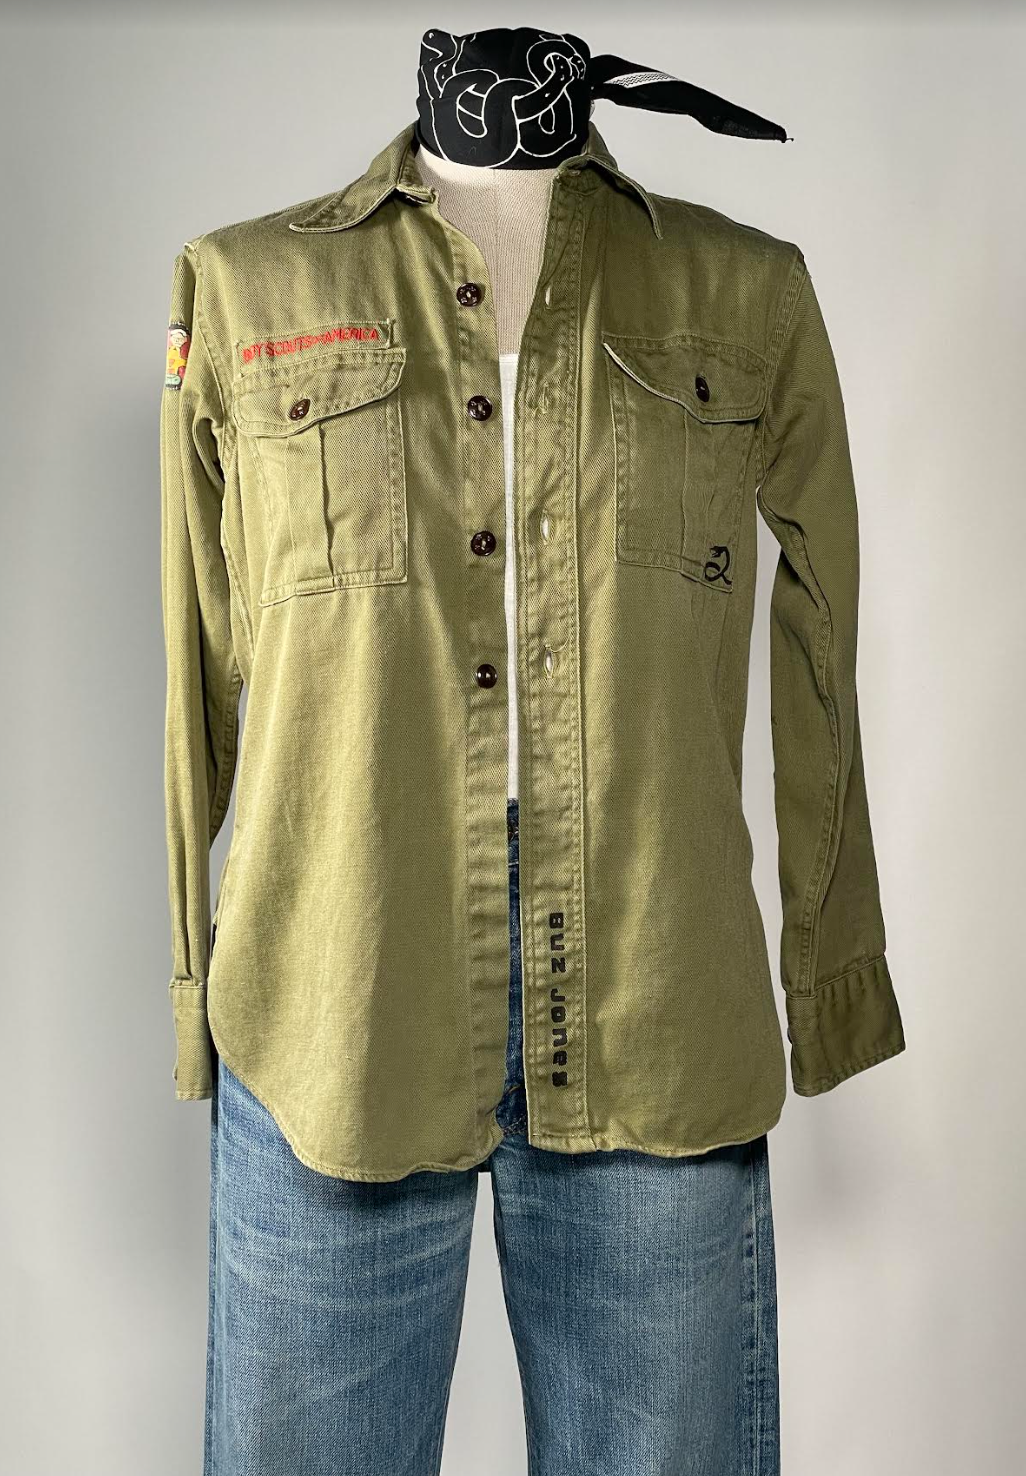 1970's 100% Cotton Green Boy Scout Shirt